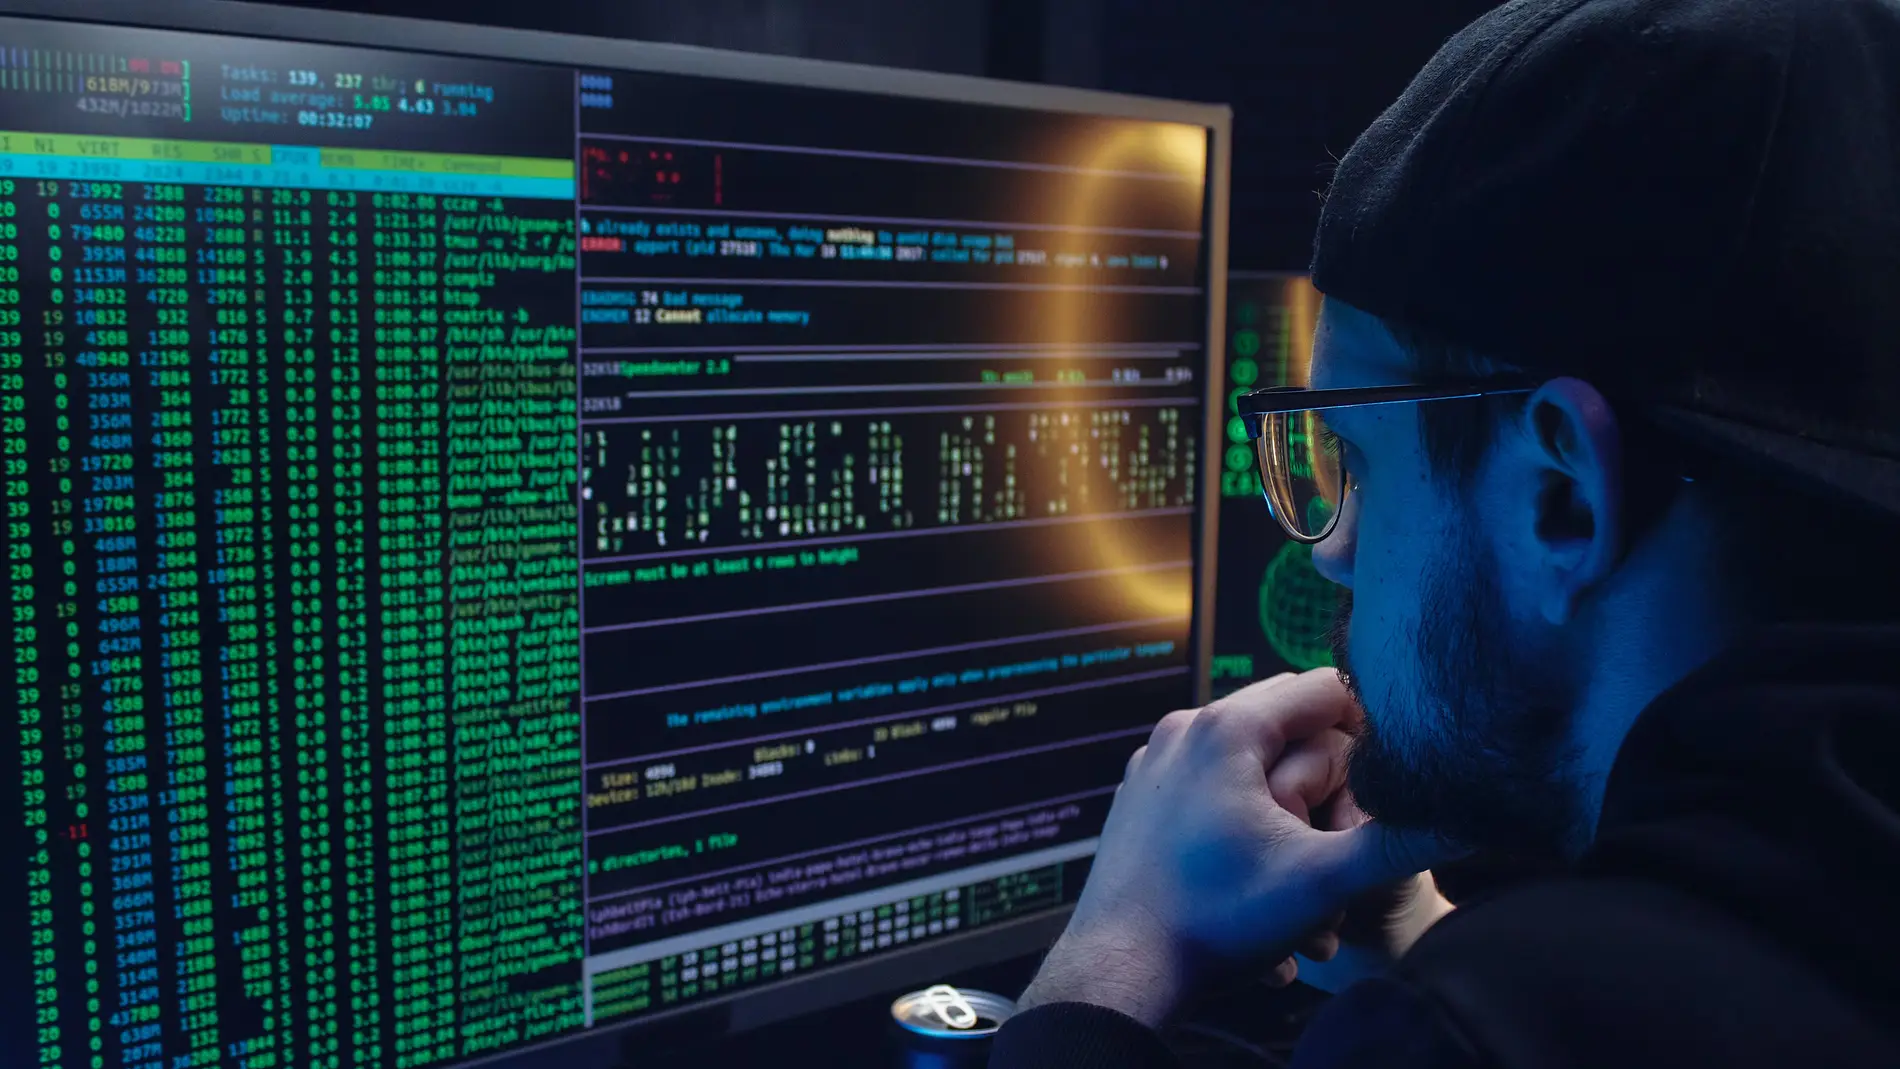 Hombre observando códigos en un ordenador